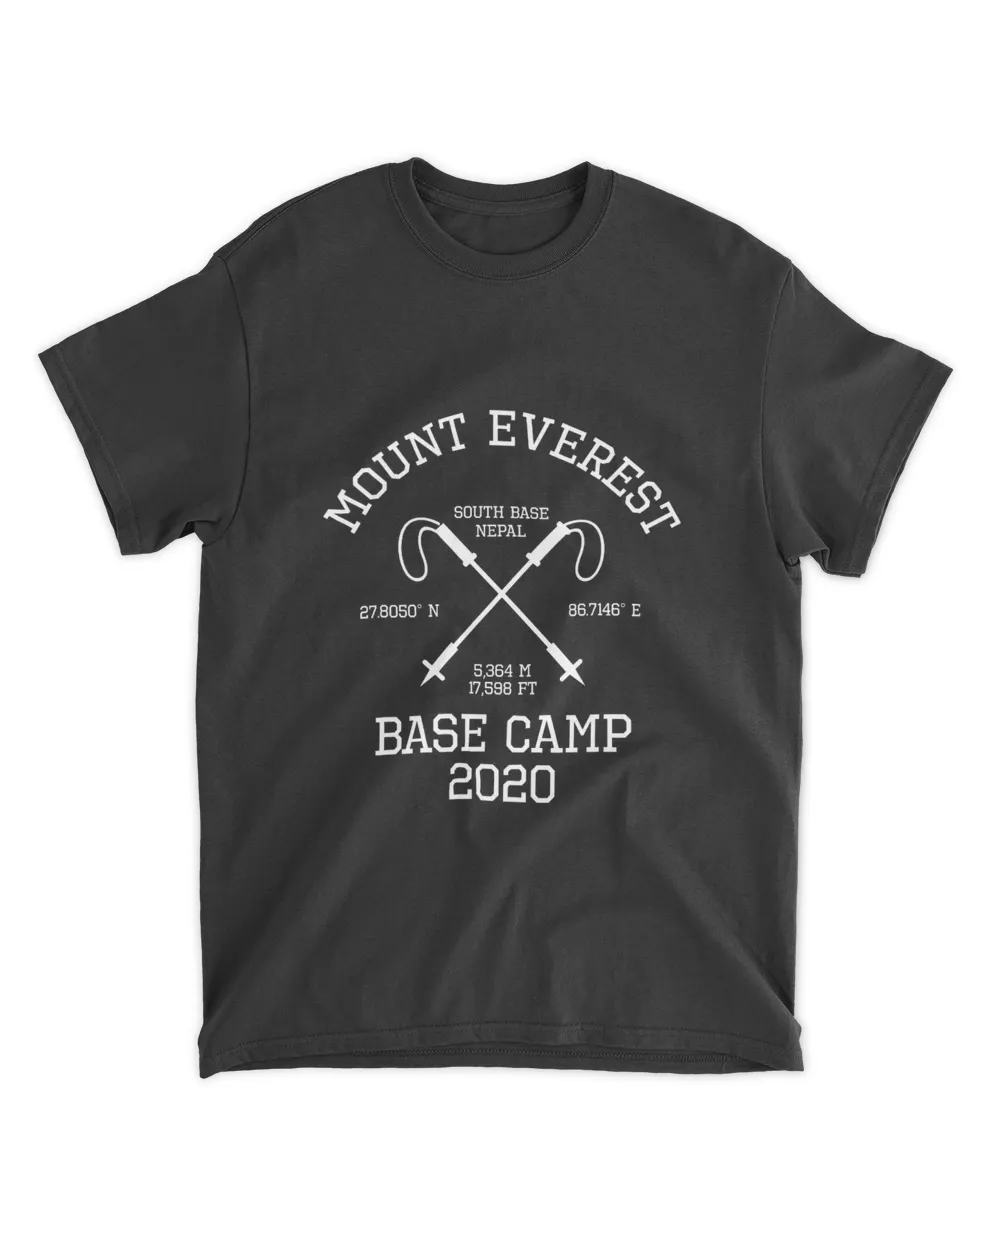 Climbed Base Camp Mount Everest 2020 Hike South Base Nepal T Shirt